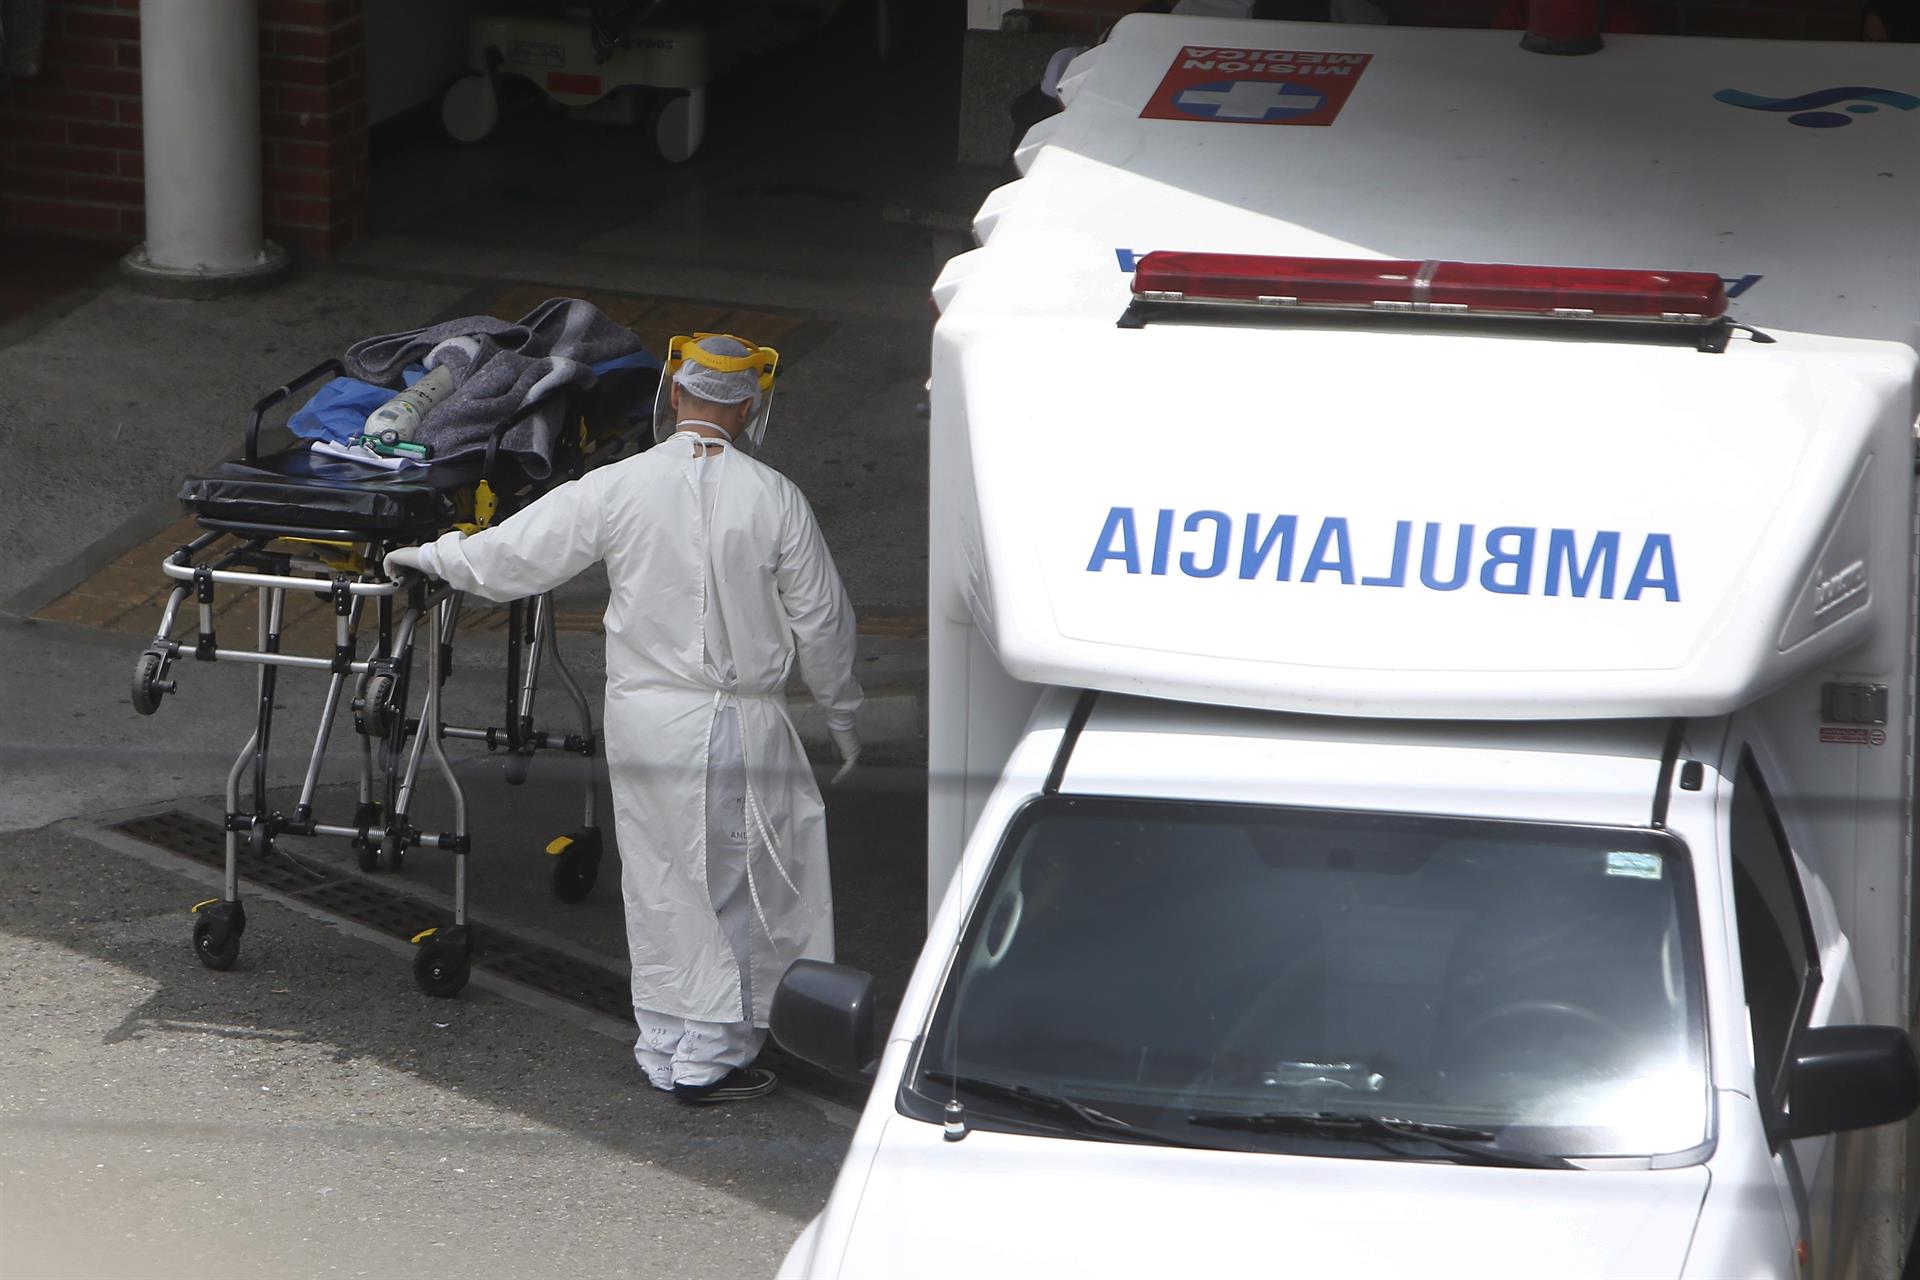 Colombia sumó más de 400 muertes por Covid-19 con los hospitales al límite